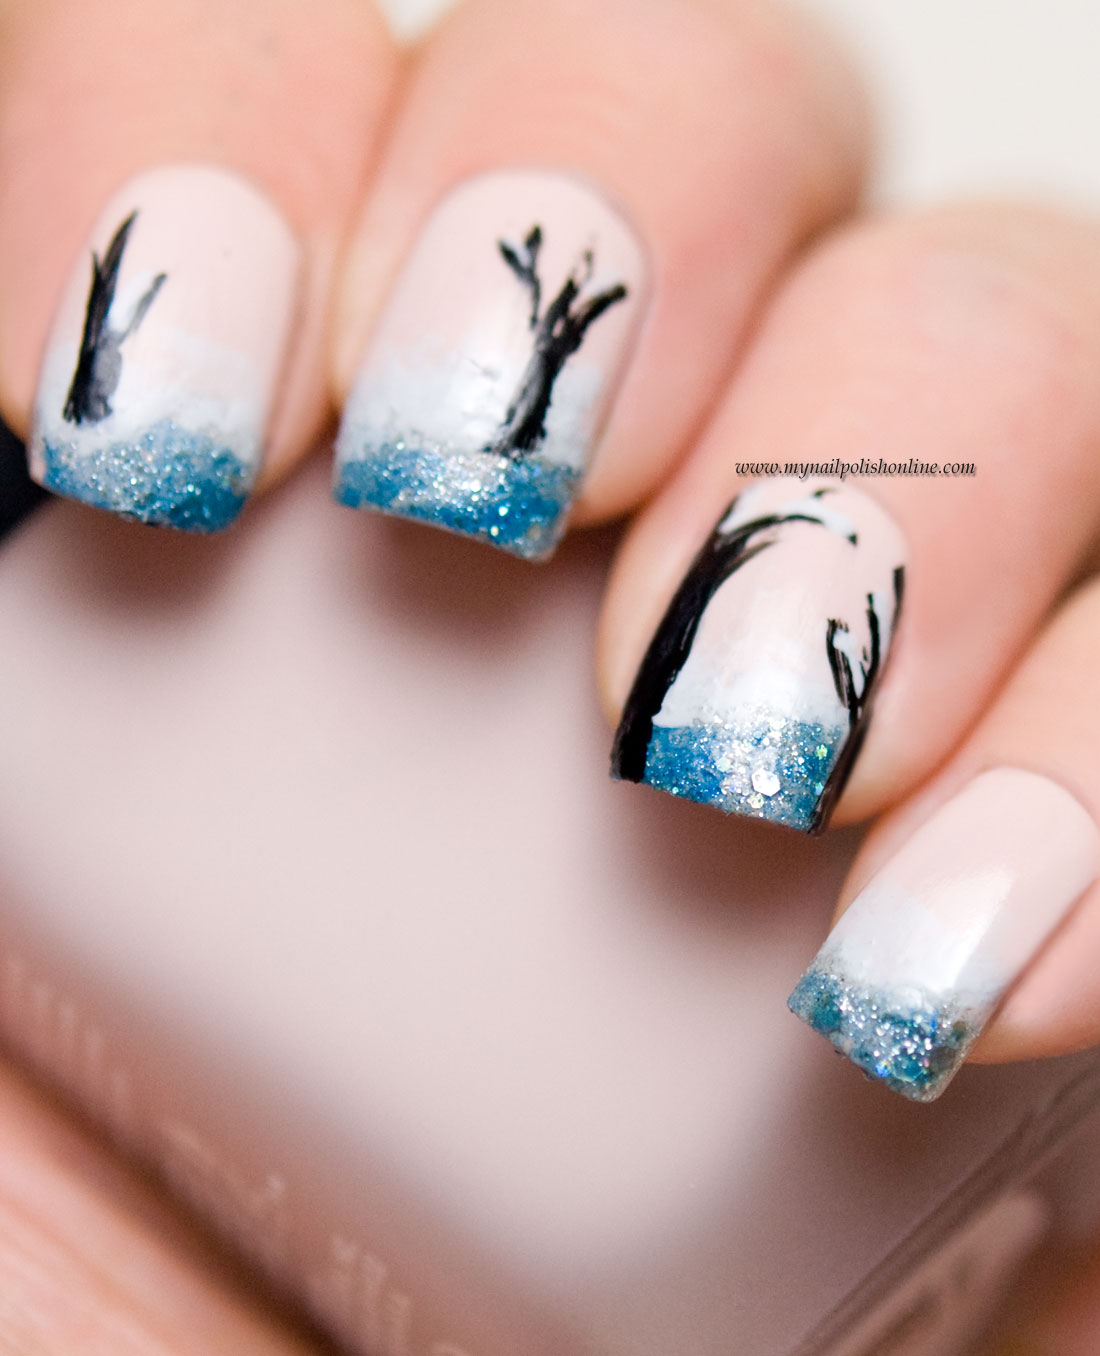 Nail Art - Winter nails